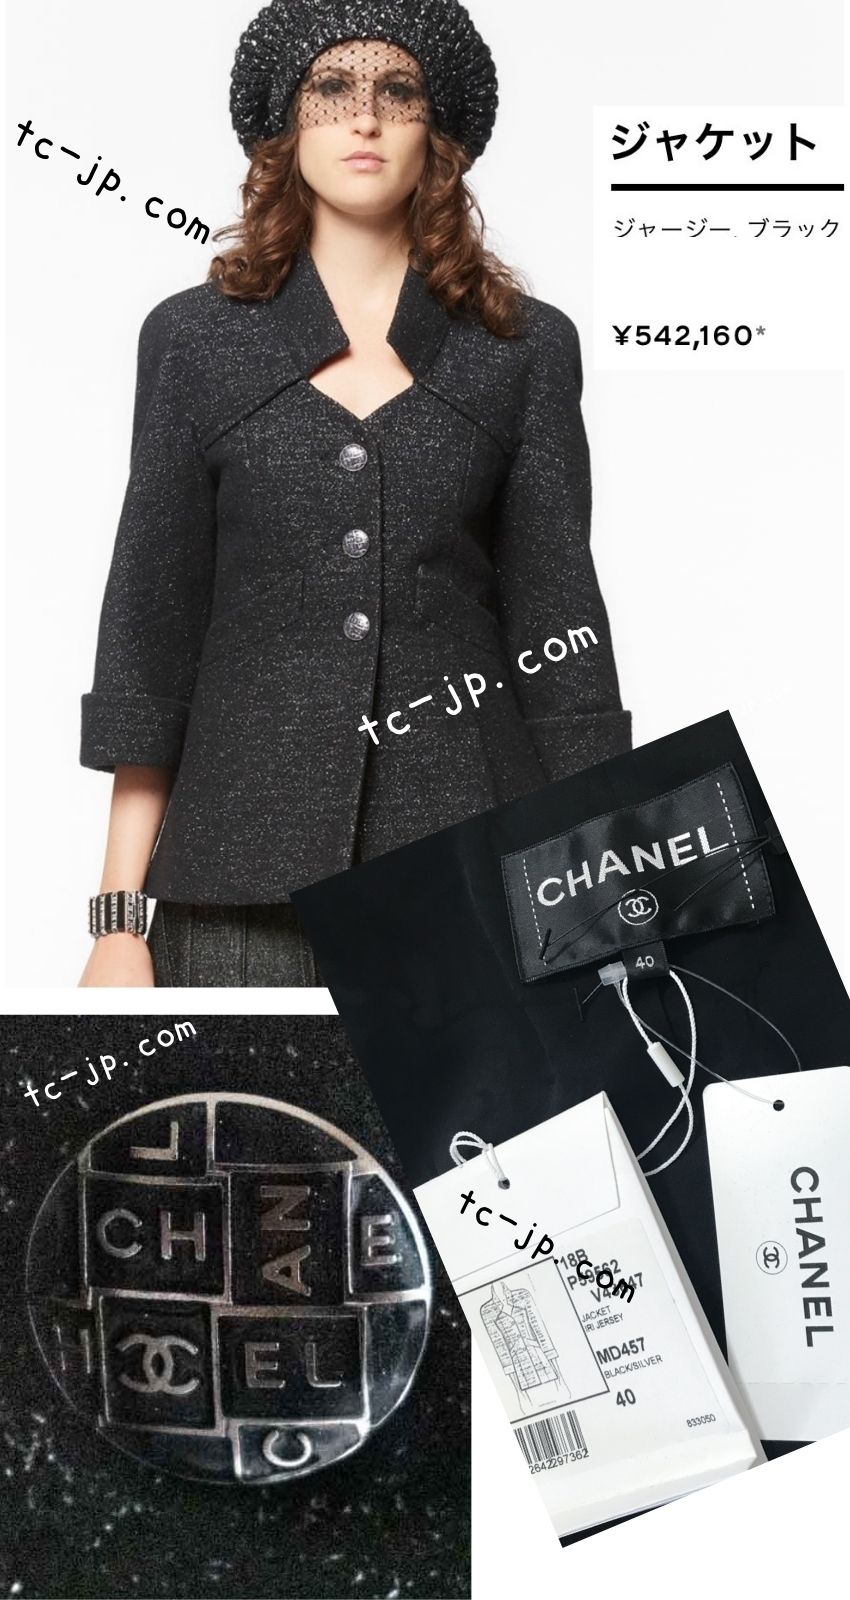 CHANEL 18PA Black Metallic Wool Thick Soft Jacket NWT 40 シャネル ブラック メタリック 肉厚 ふんわり ウール ジャケット コート 即発